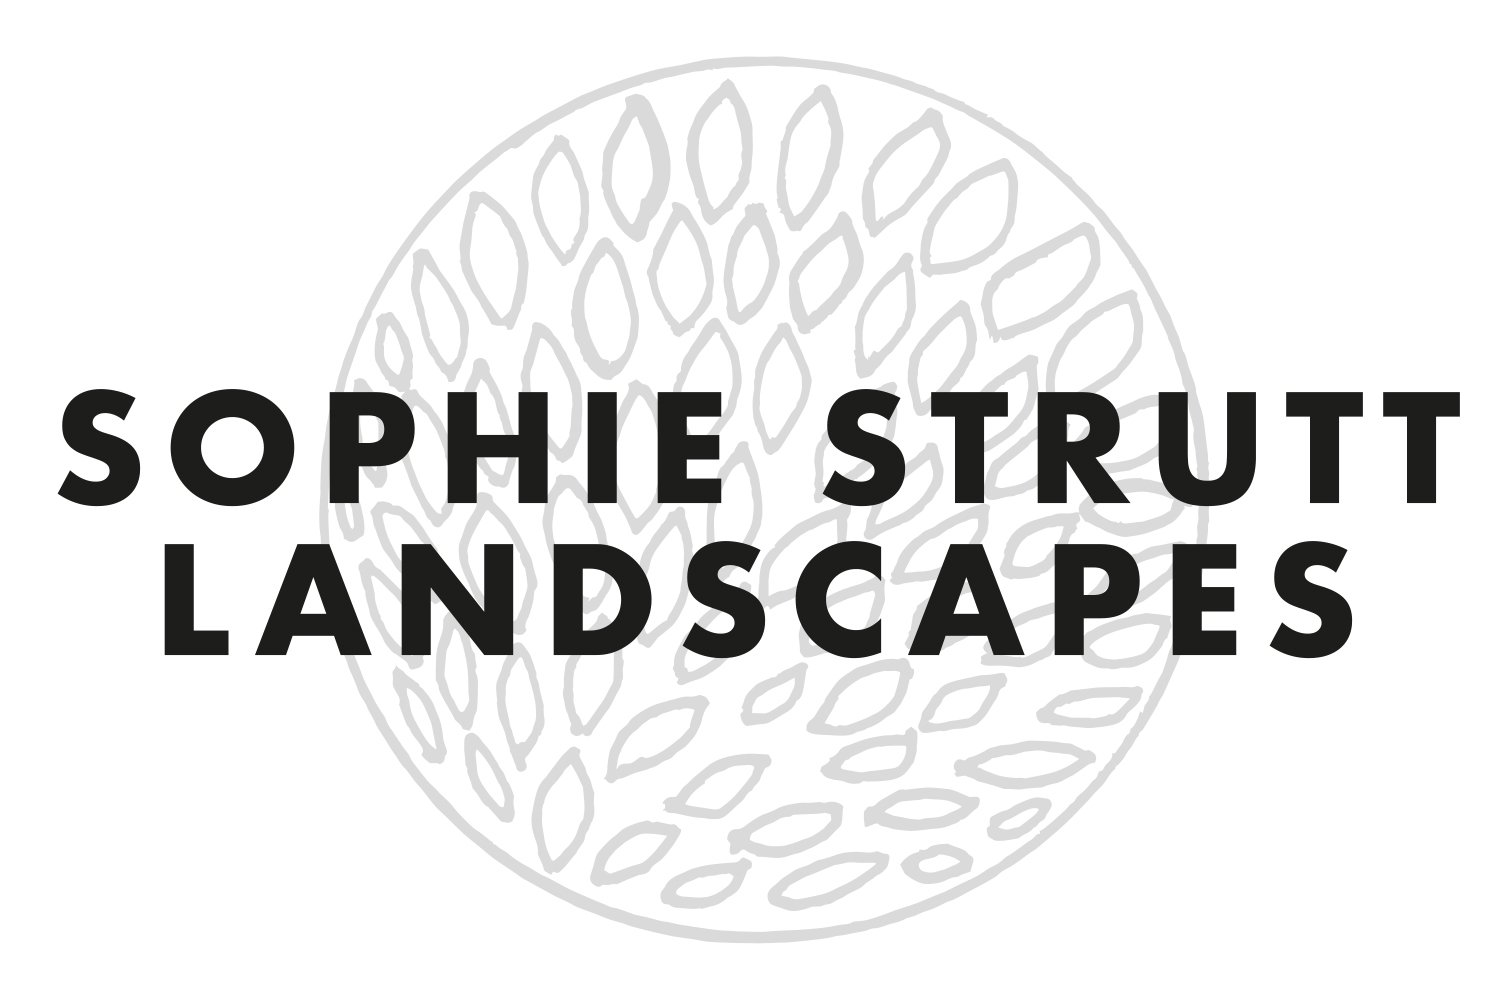 SOPHIE STRUTT LANDSCAPES